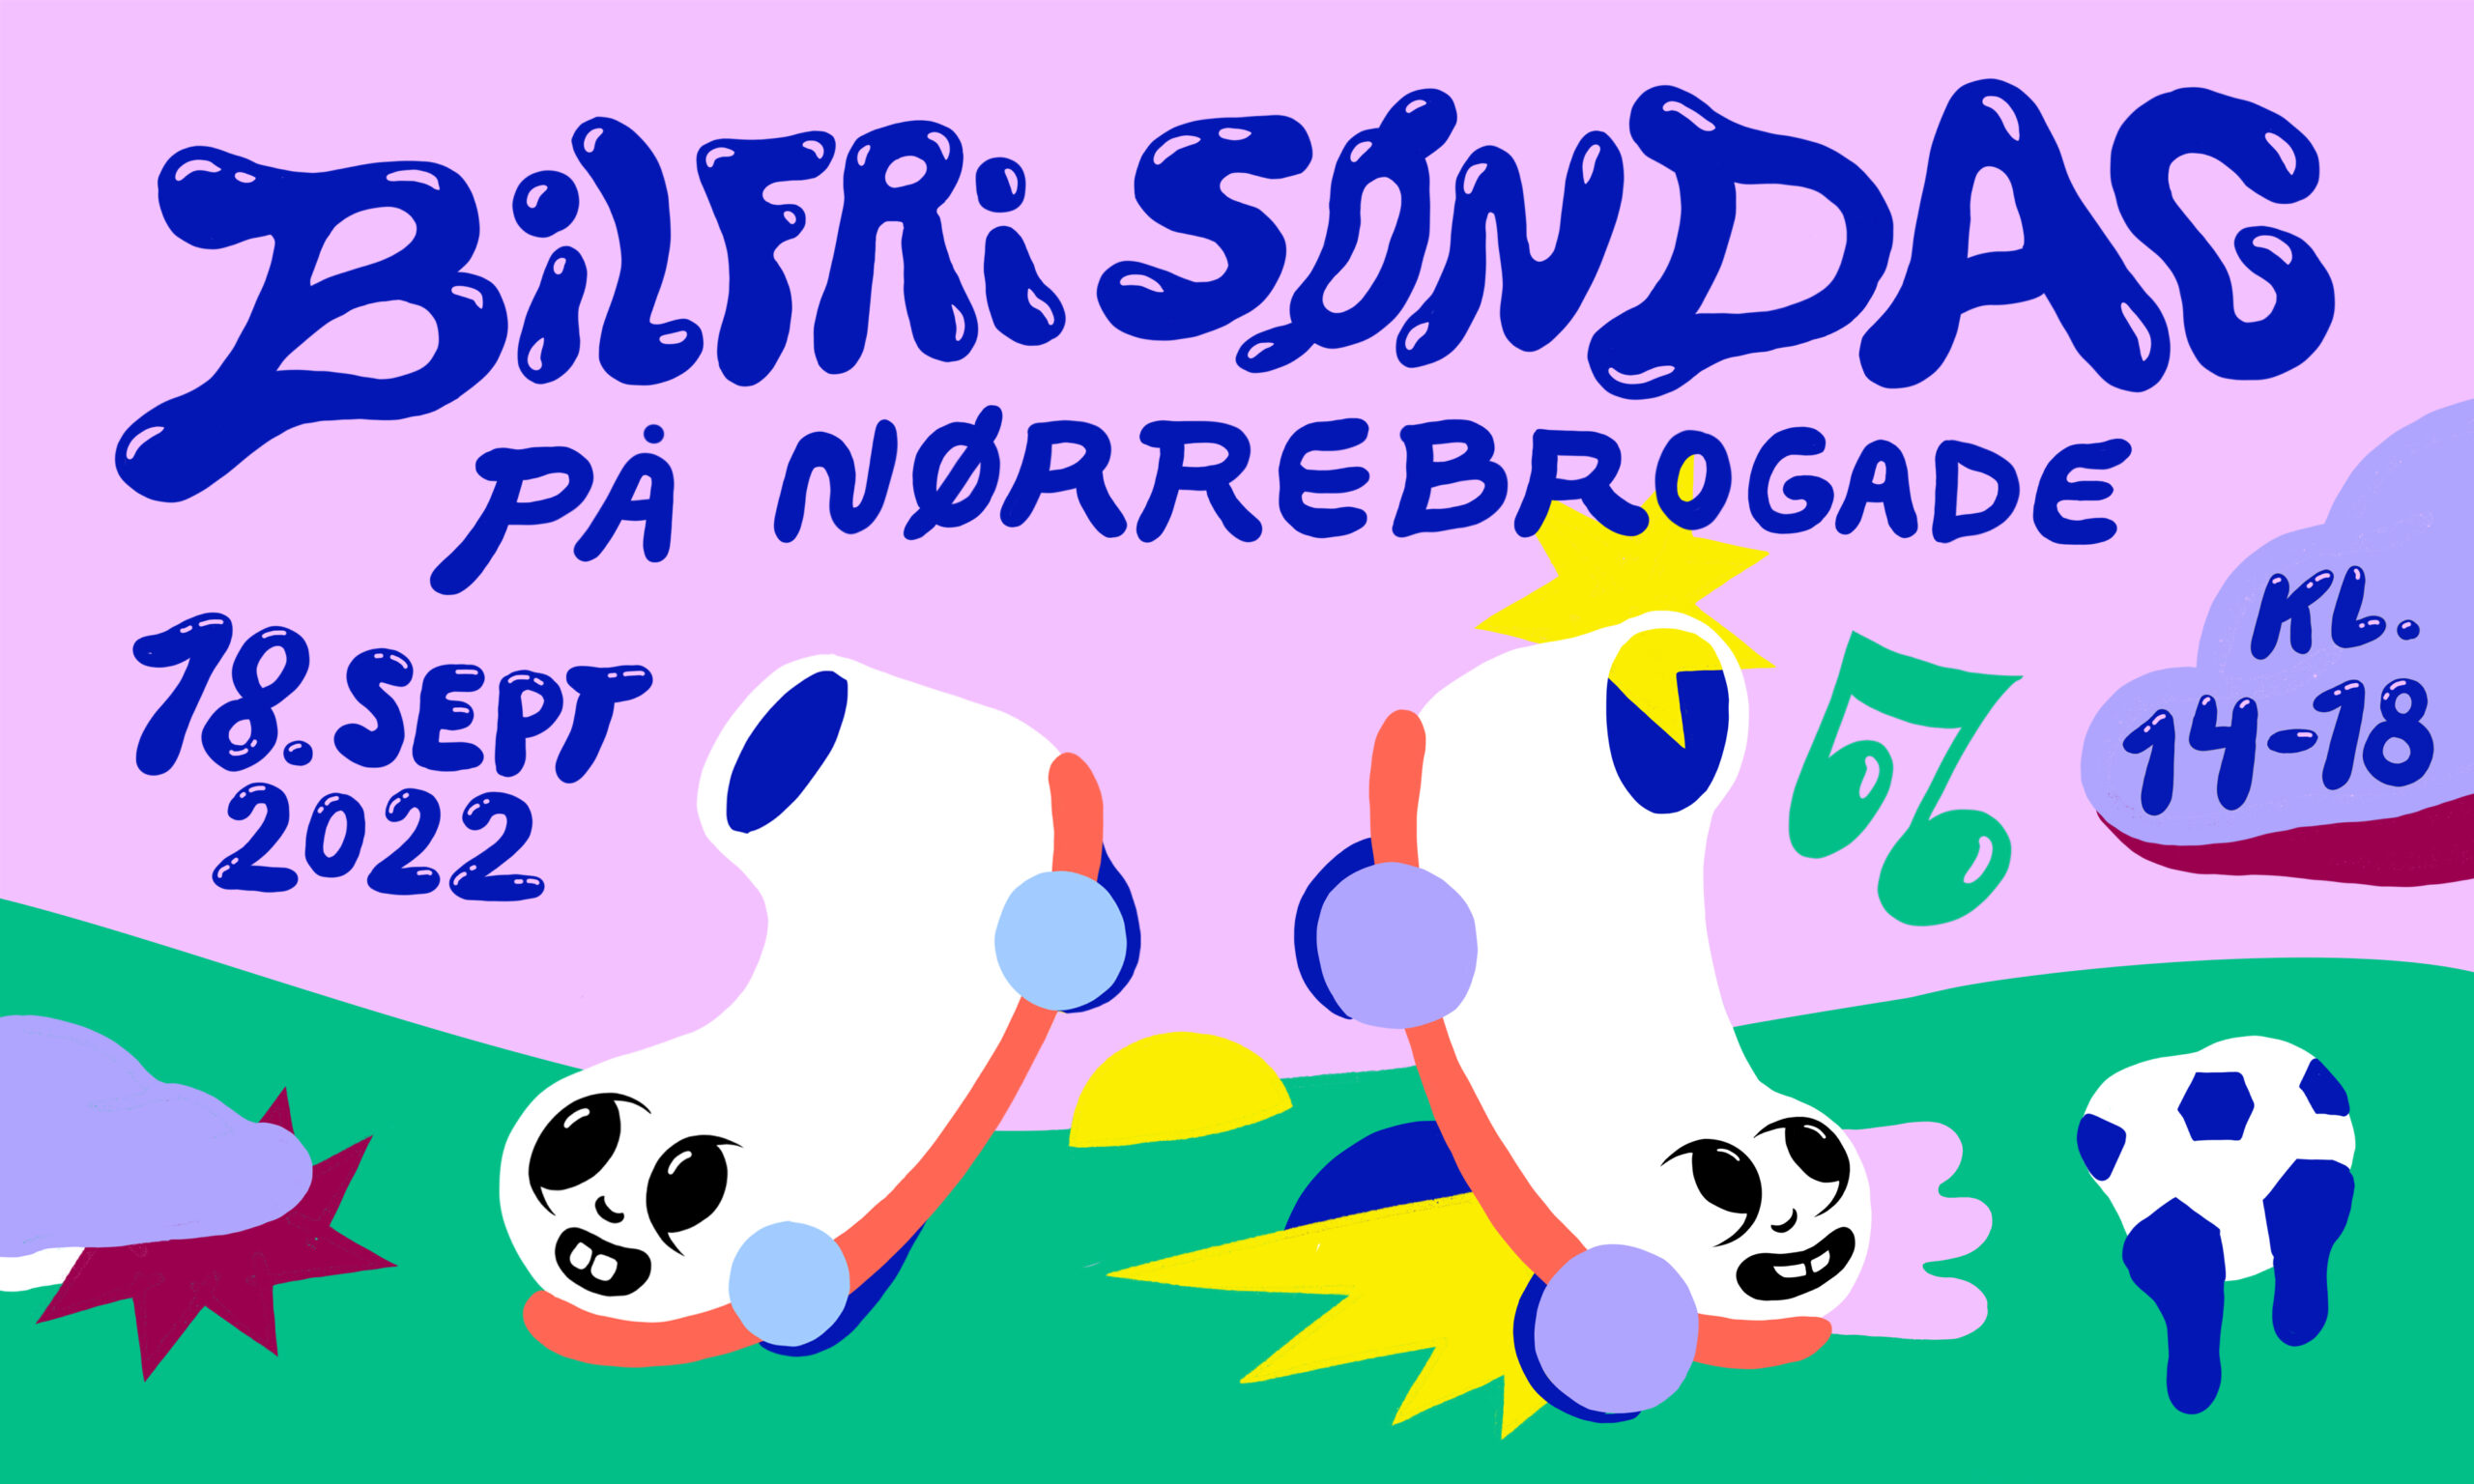 18.september: Kom til Bilfri Søndag på Nørrebrogade